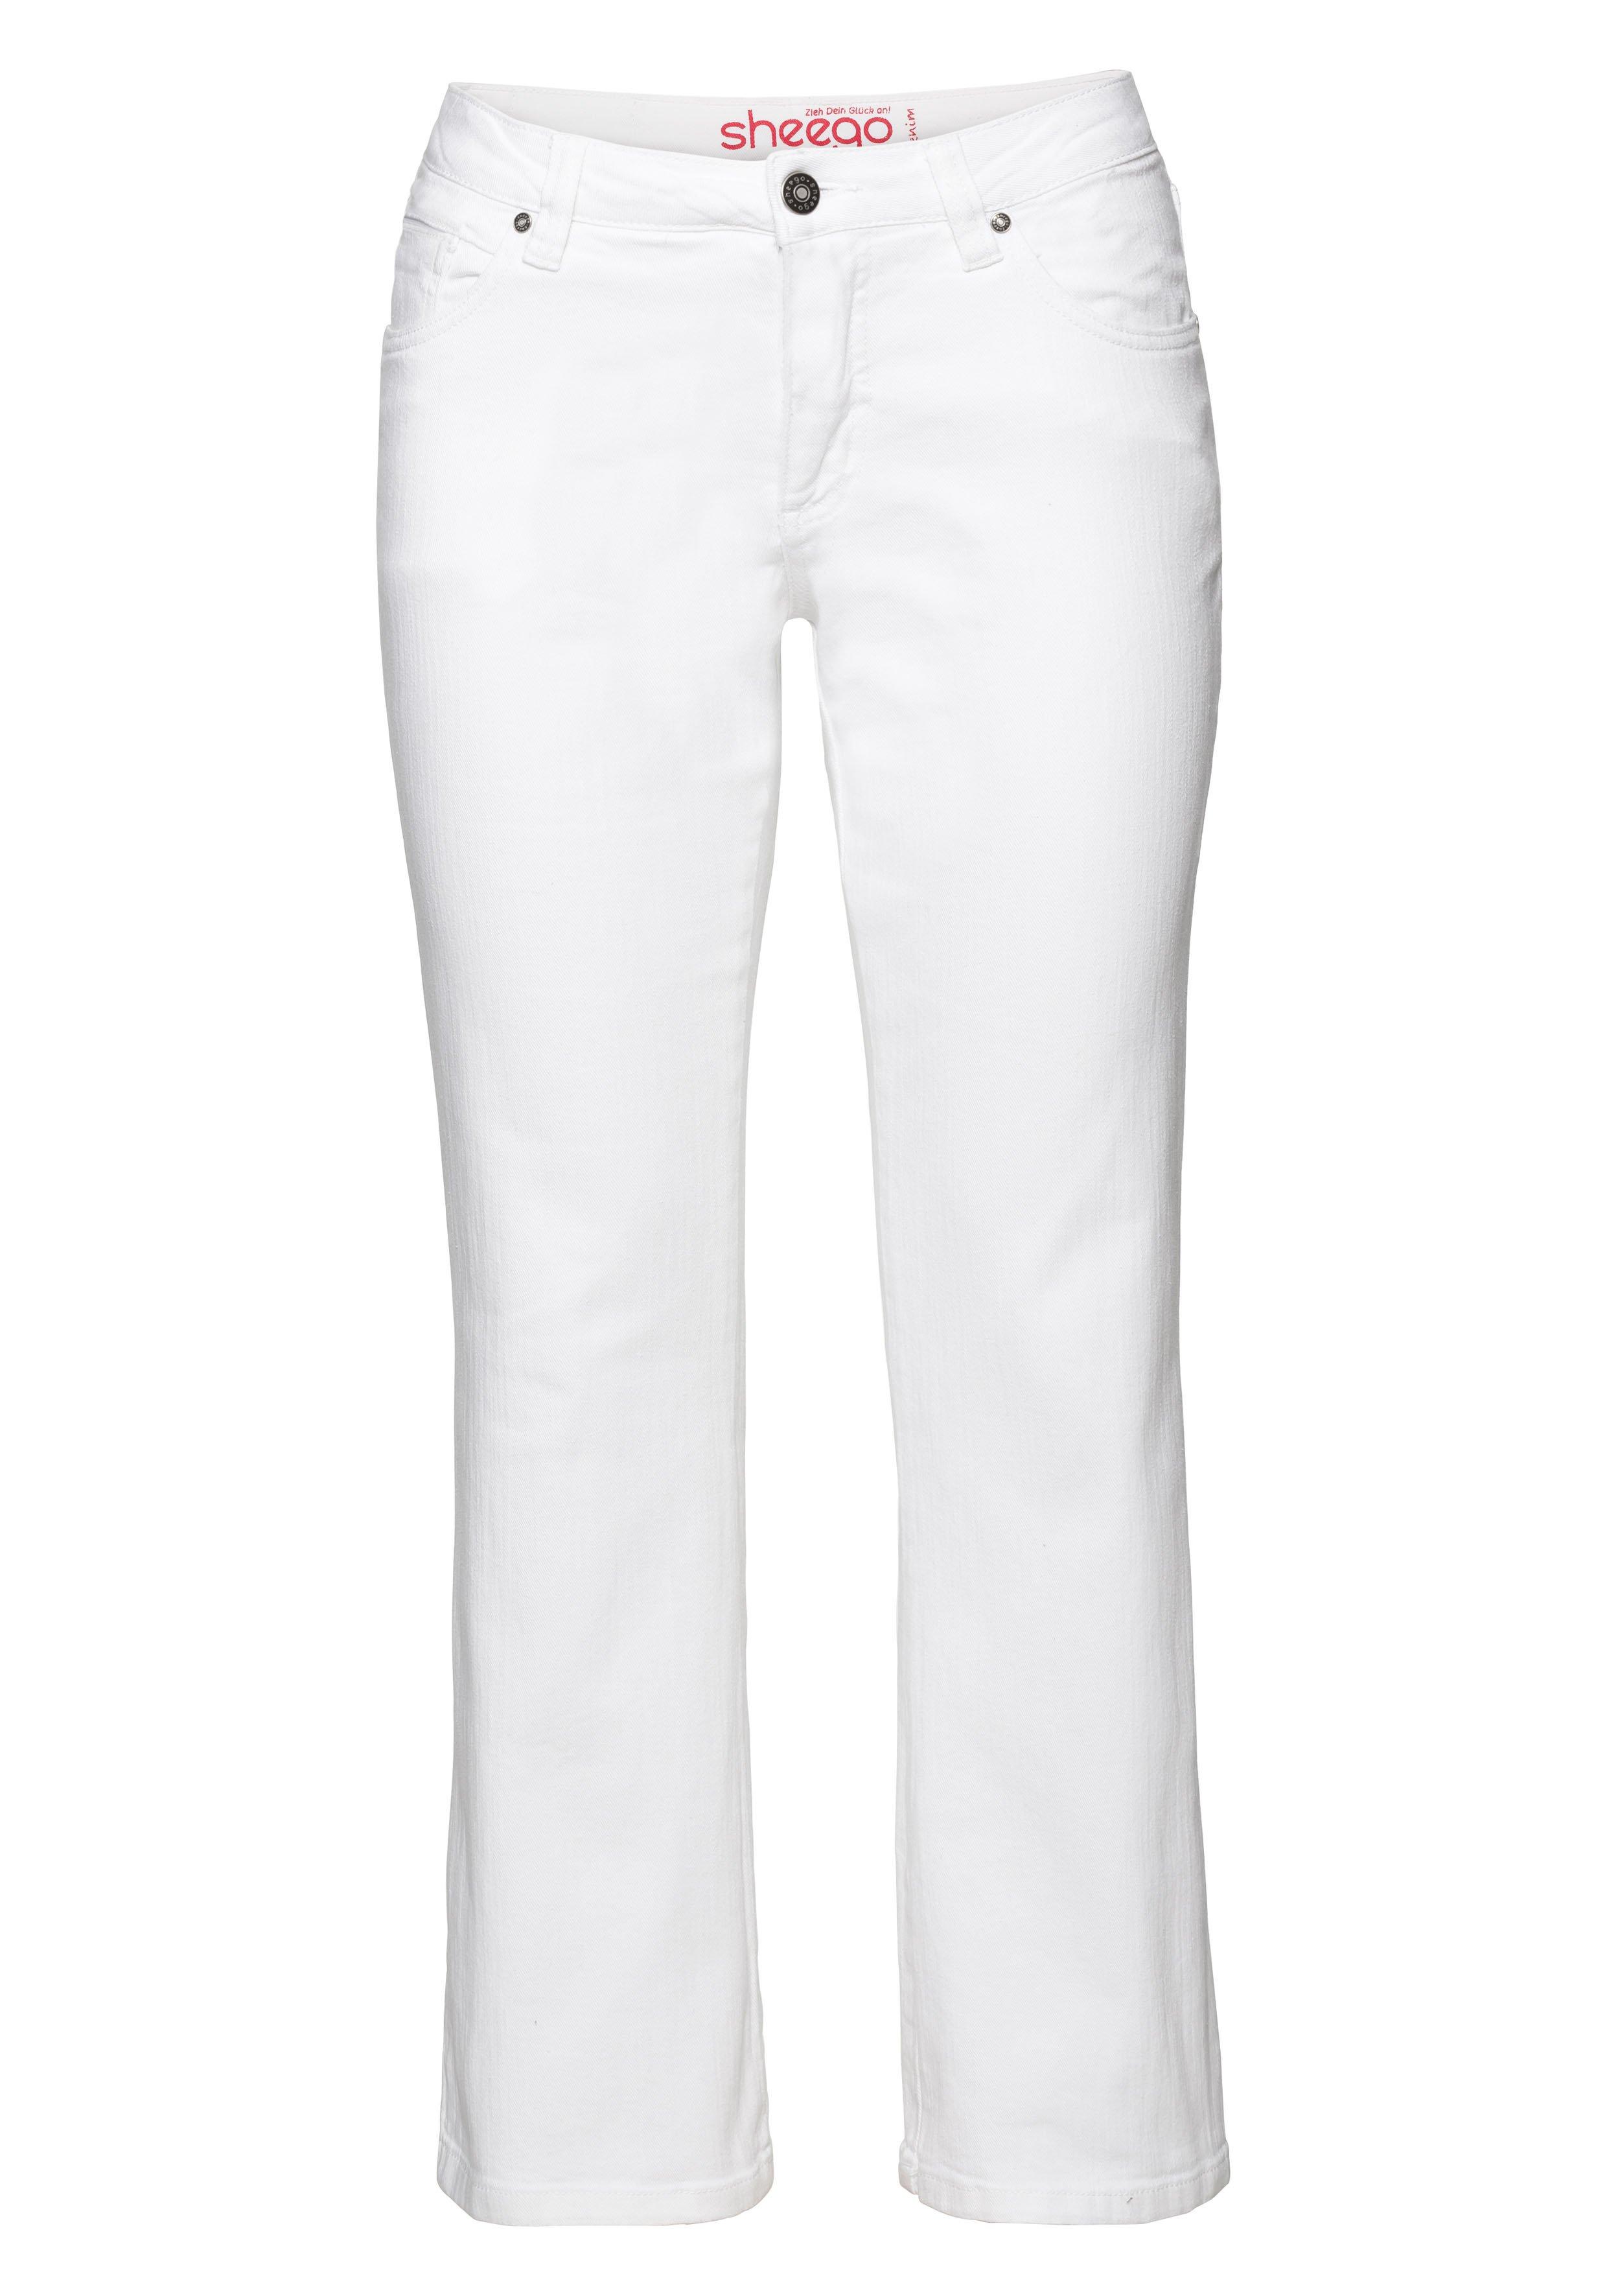 Bootcut-Jeans in 5-Pocket-Form, blue - Denim Used-Effekten mit dark sheego 